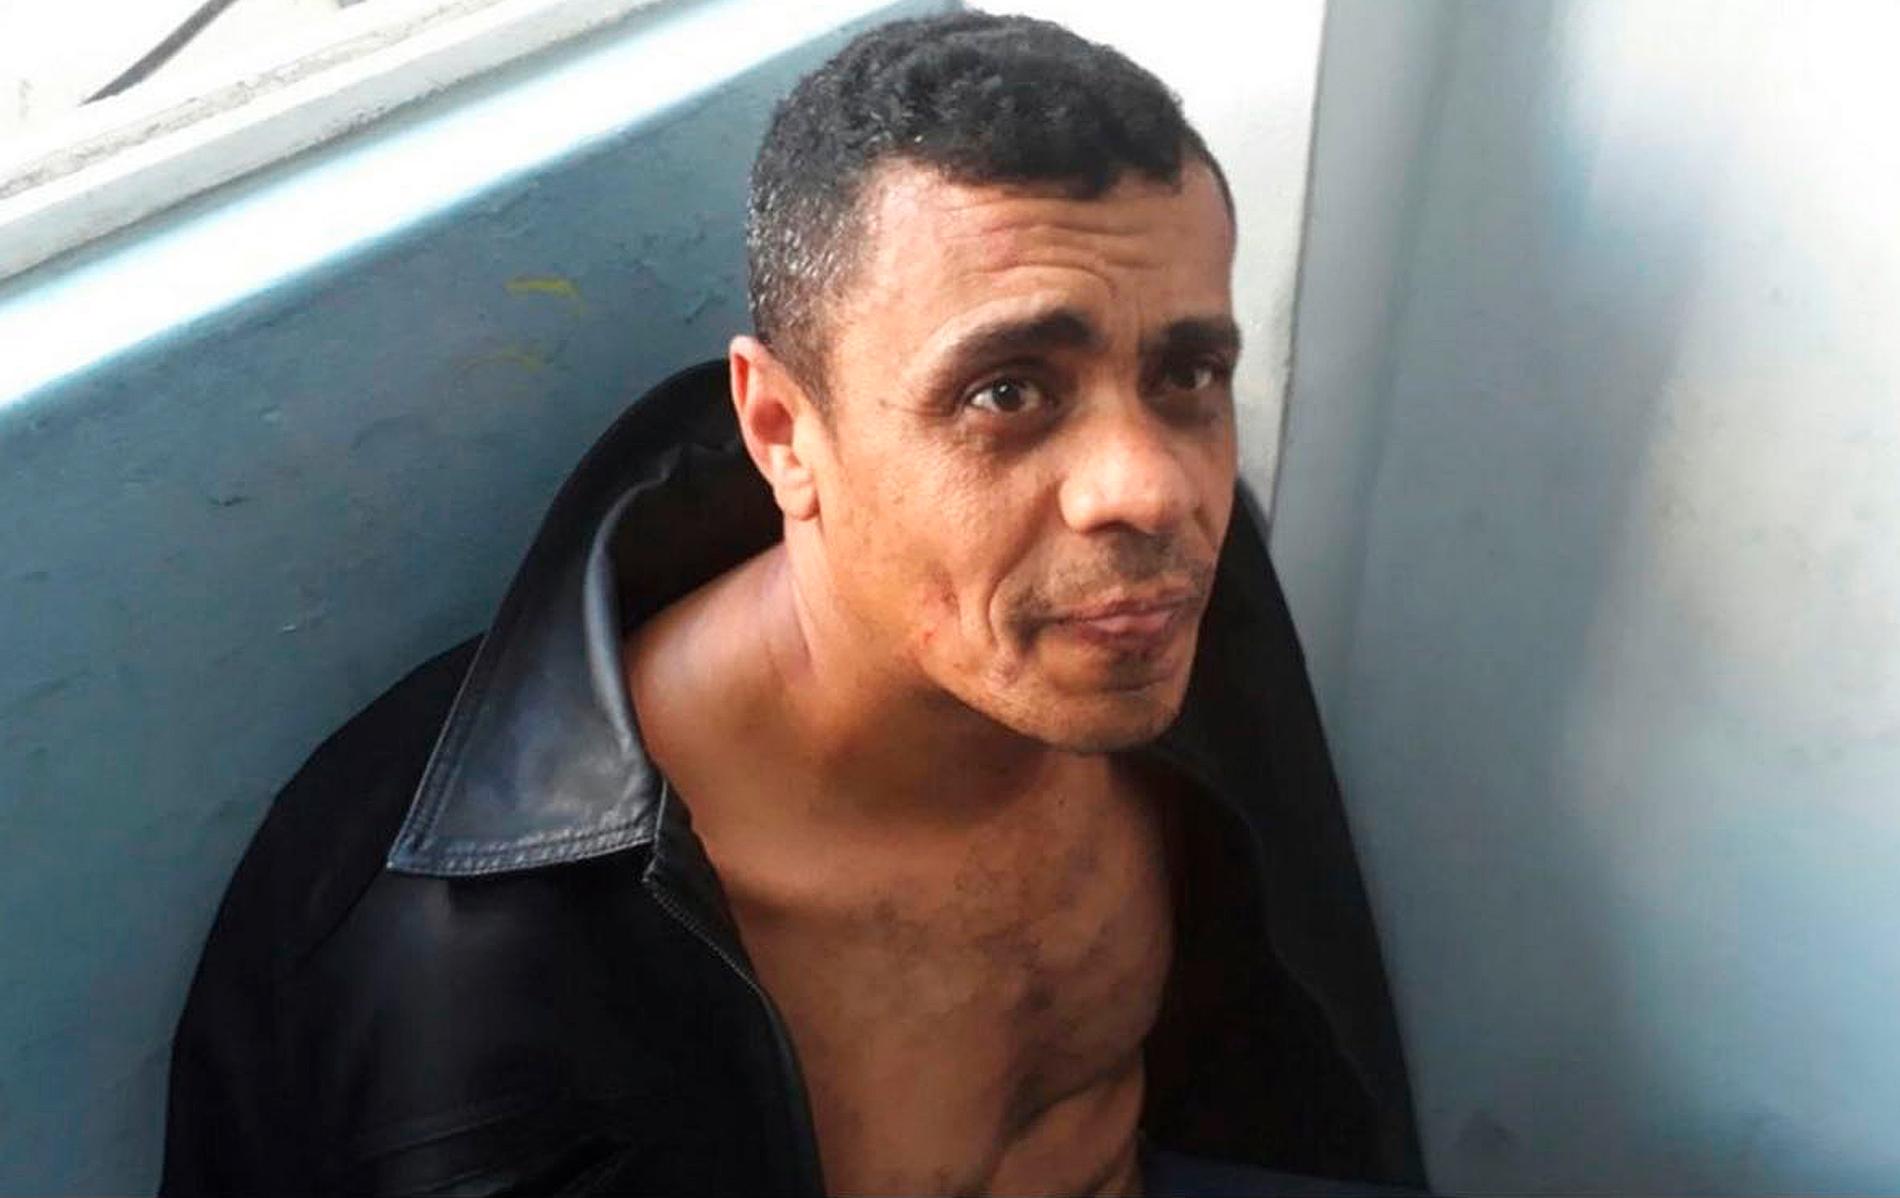 Den gripne för dådet, Adelio Bispo de Oliveira, på polisens bild.